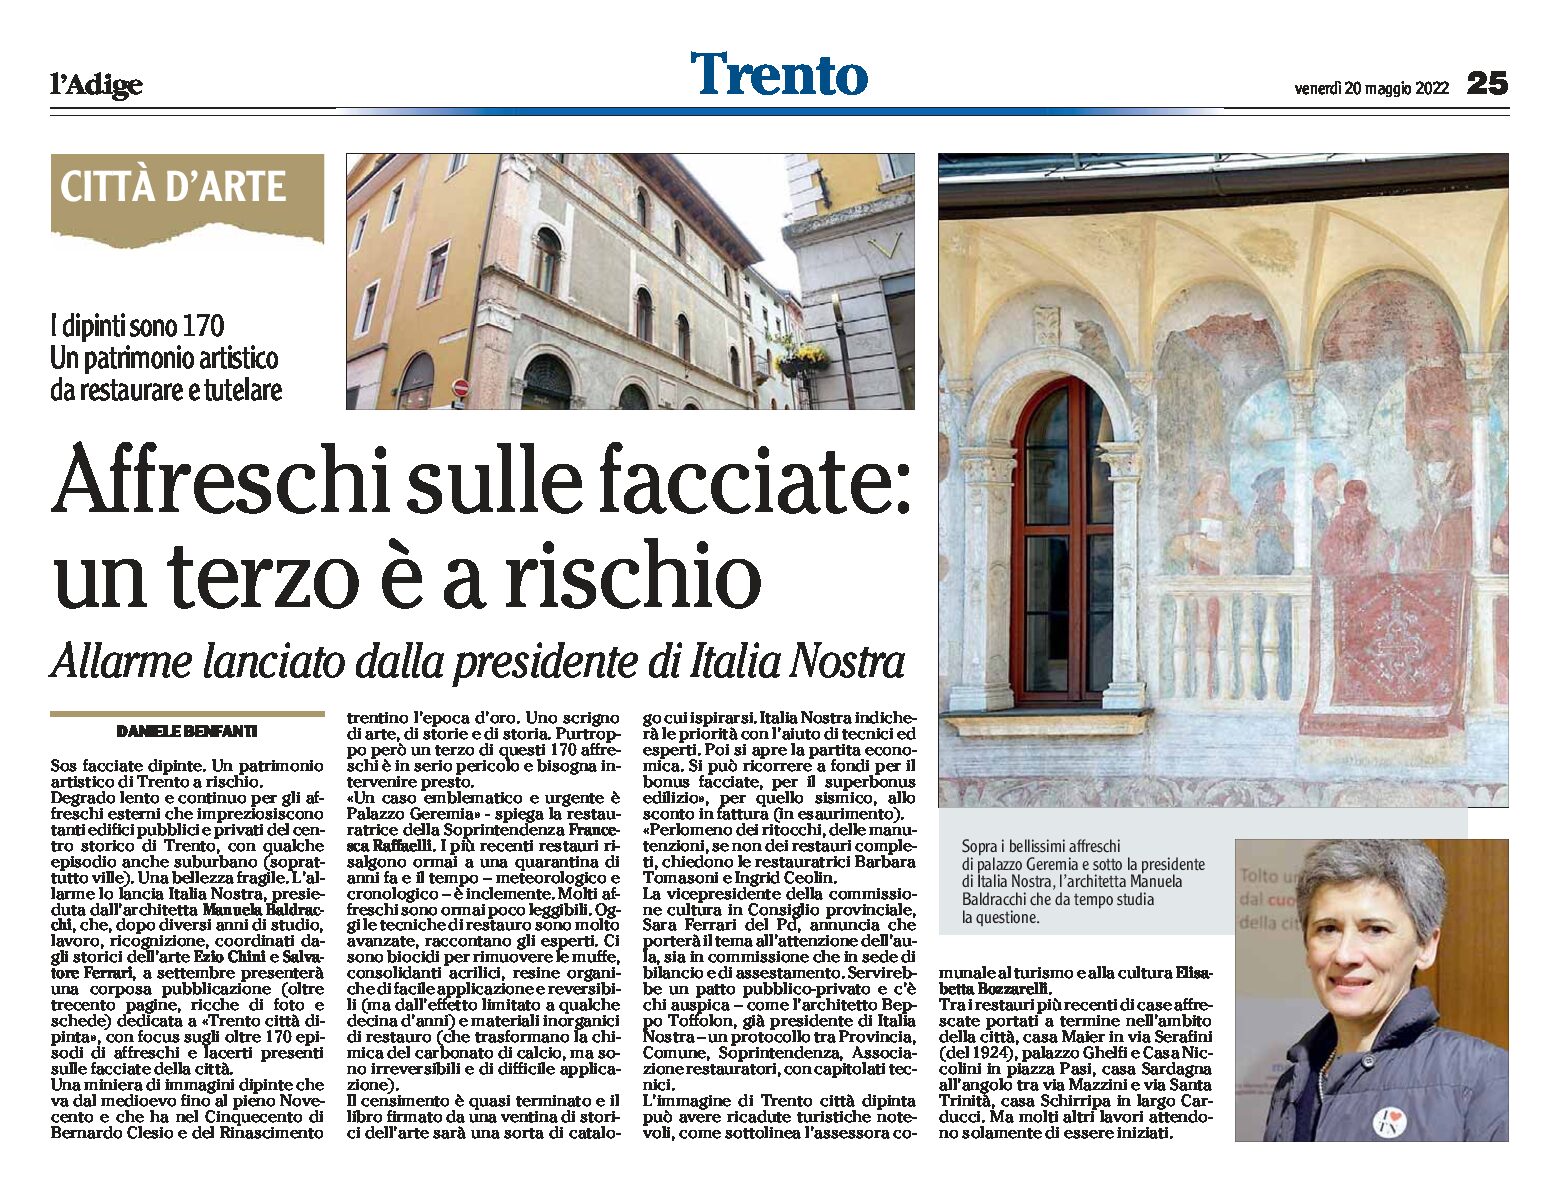 Italia Nostra lancia l’allarme: è a rischio un terzo degli affreschi sulle facciate di Trento